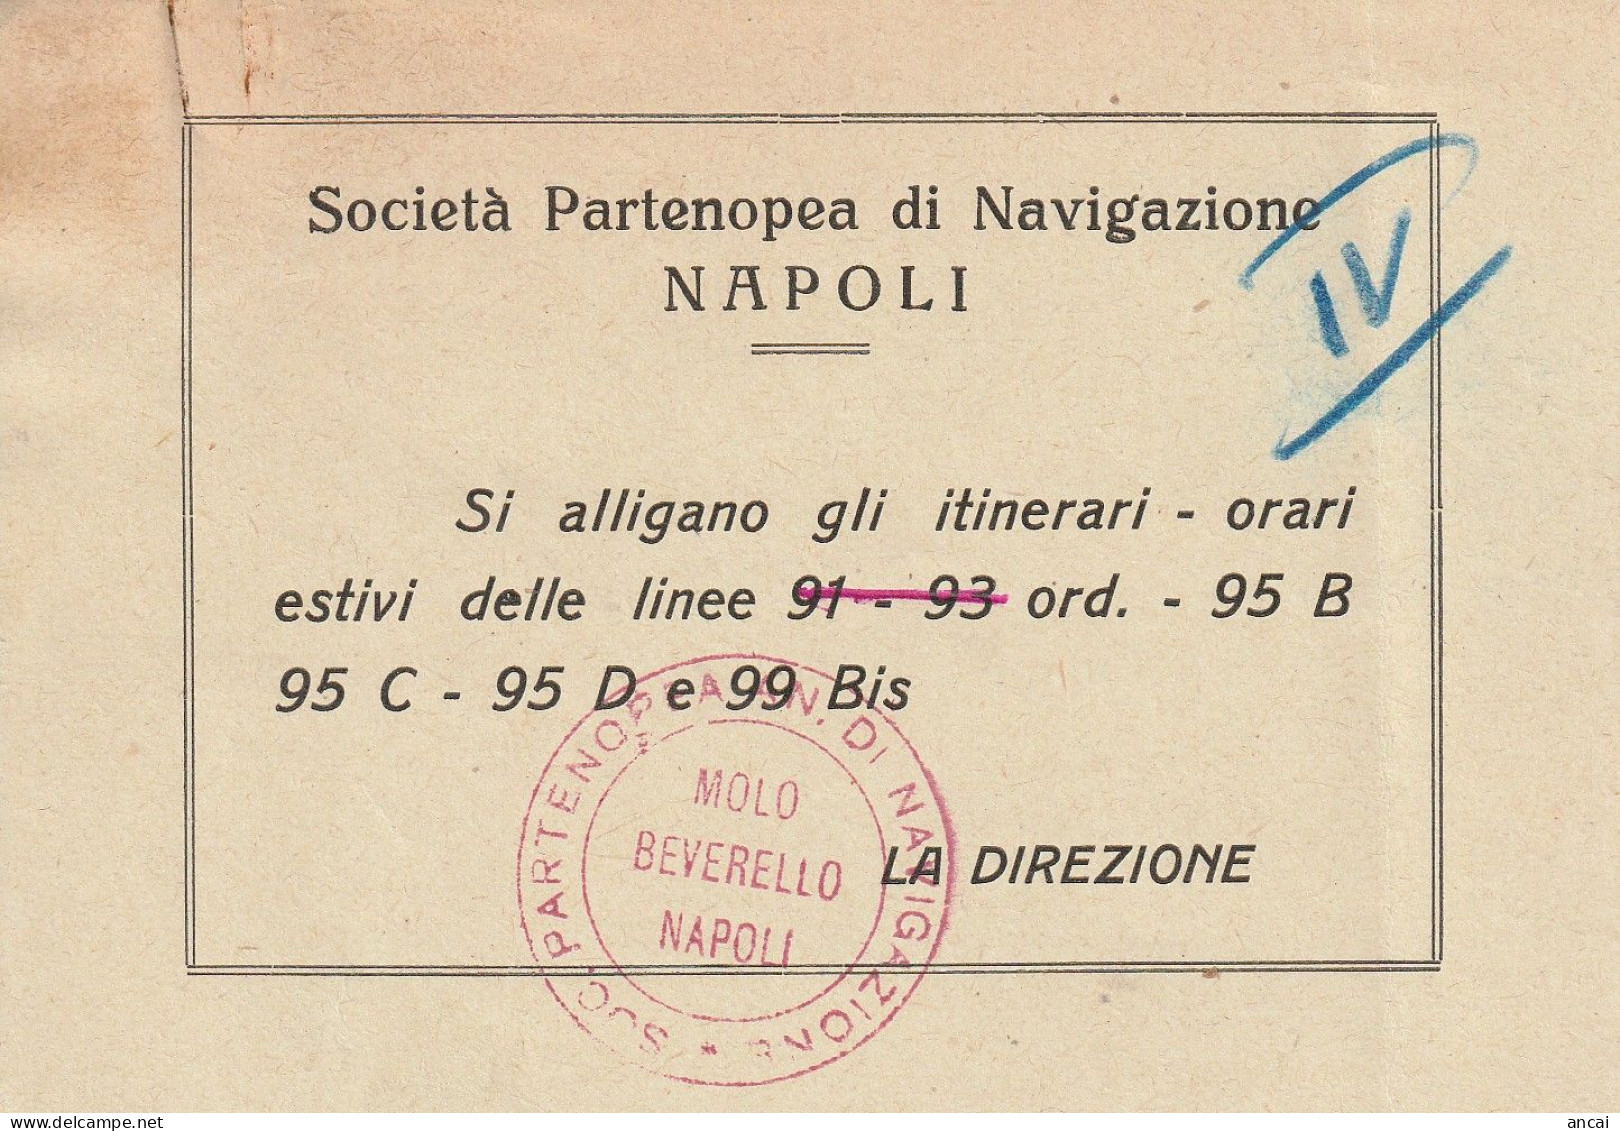 Napoli. SOCIETA' PARTENOPEA DI NAVIGAZIONE (S.P.A.N.). Orario Estivo 1953. INTERESSANTE DOCUMENTO. MOLTO RARO. - Europe